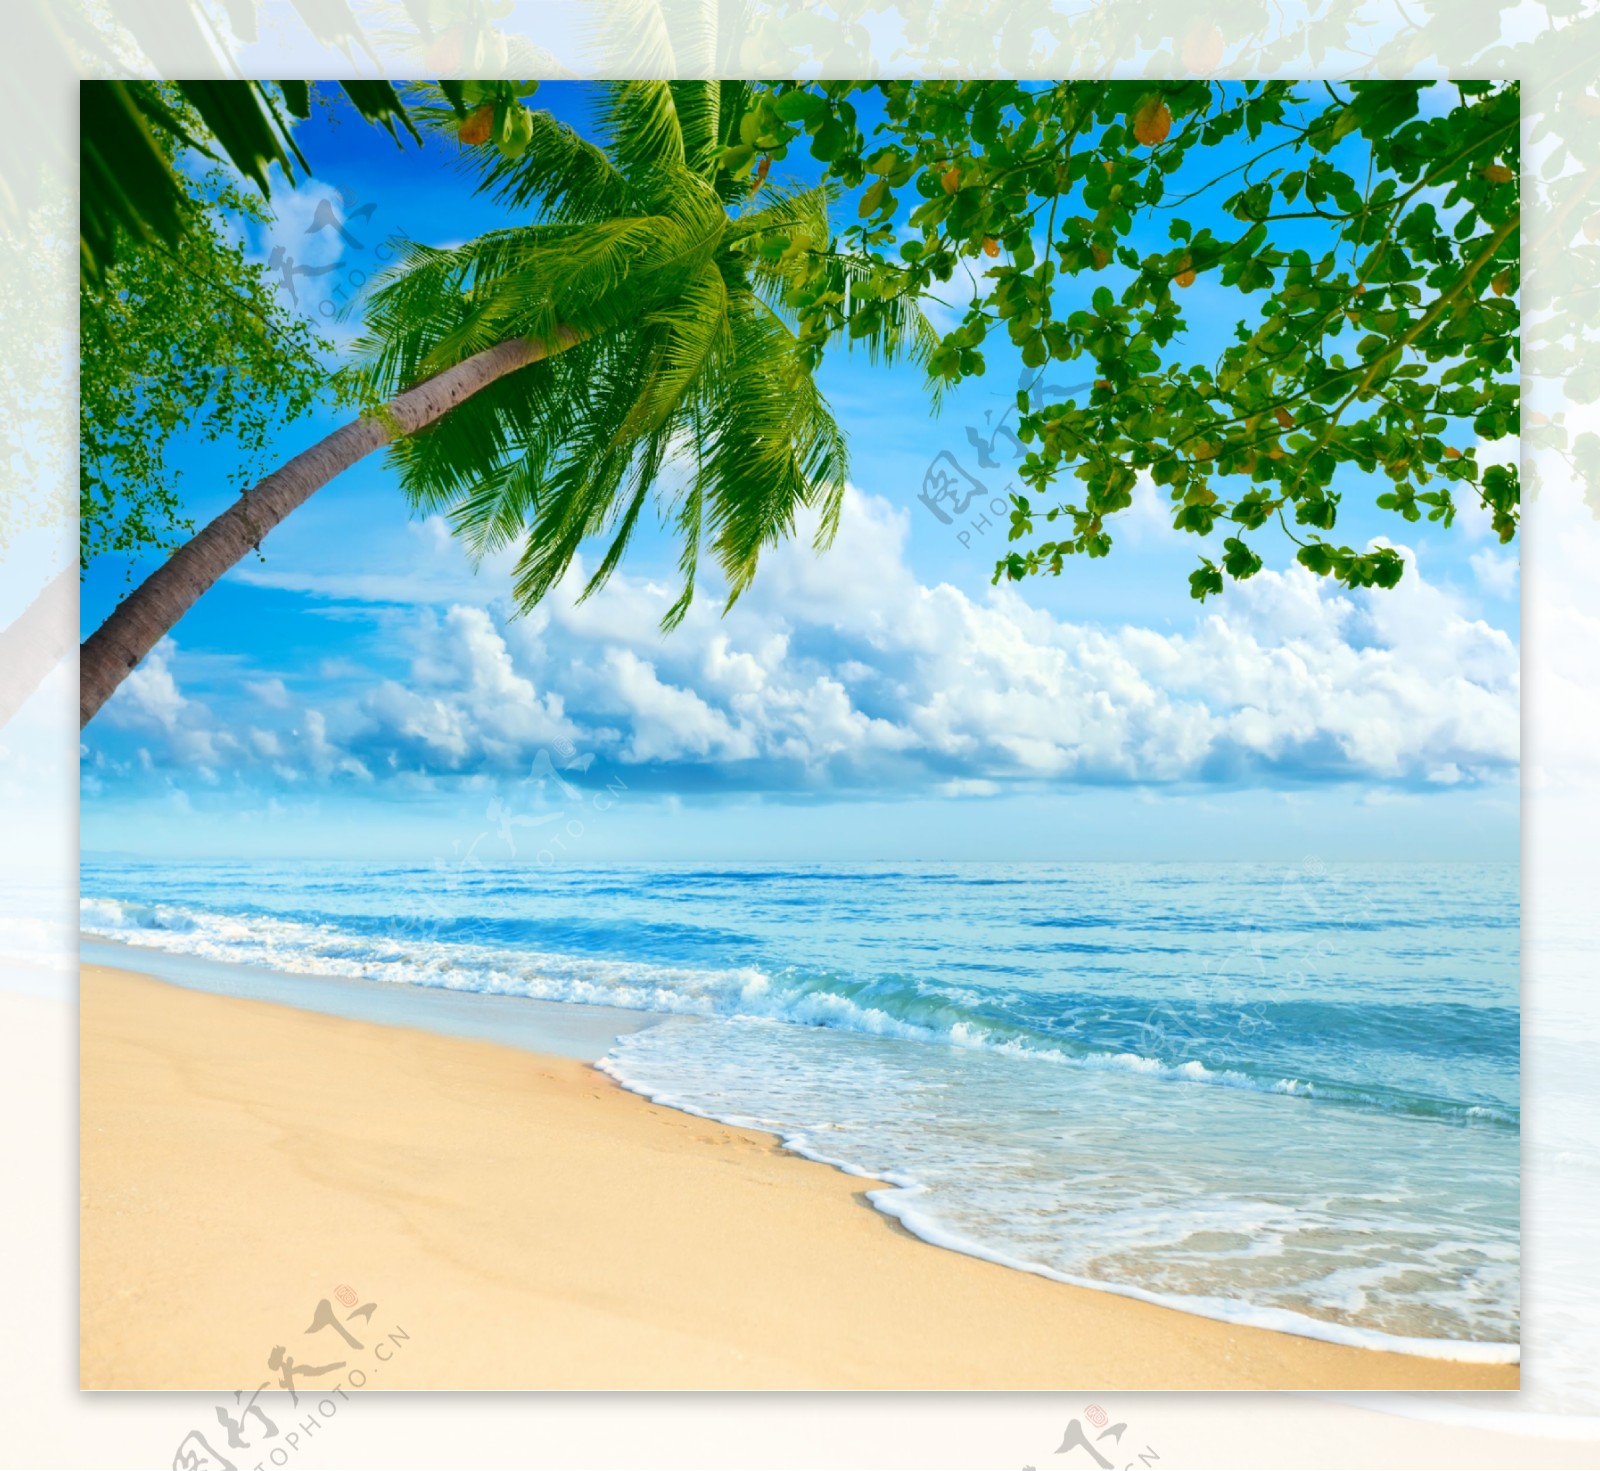 椰树海滩风景图片